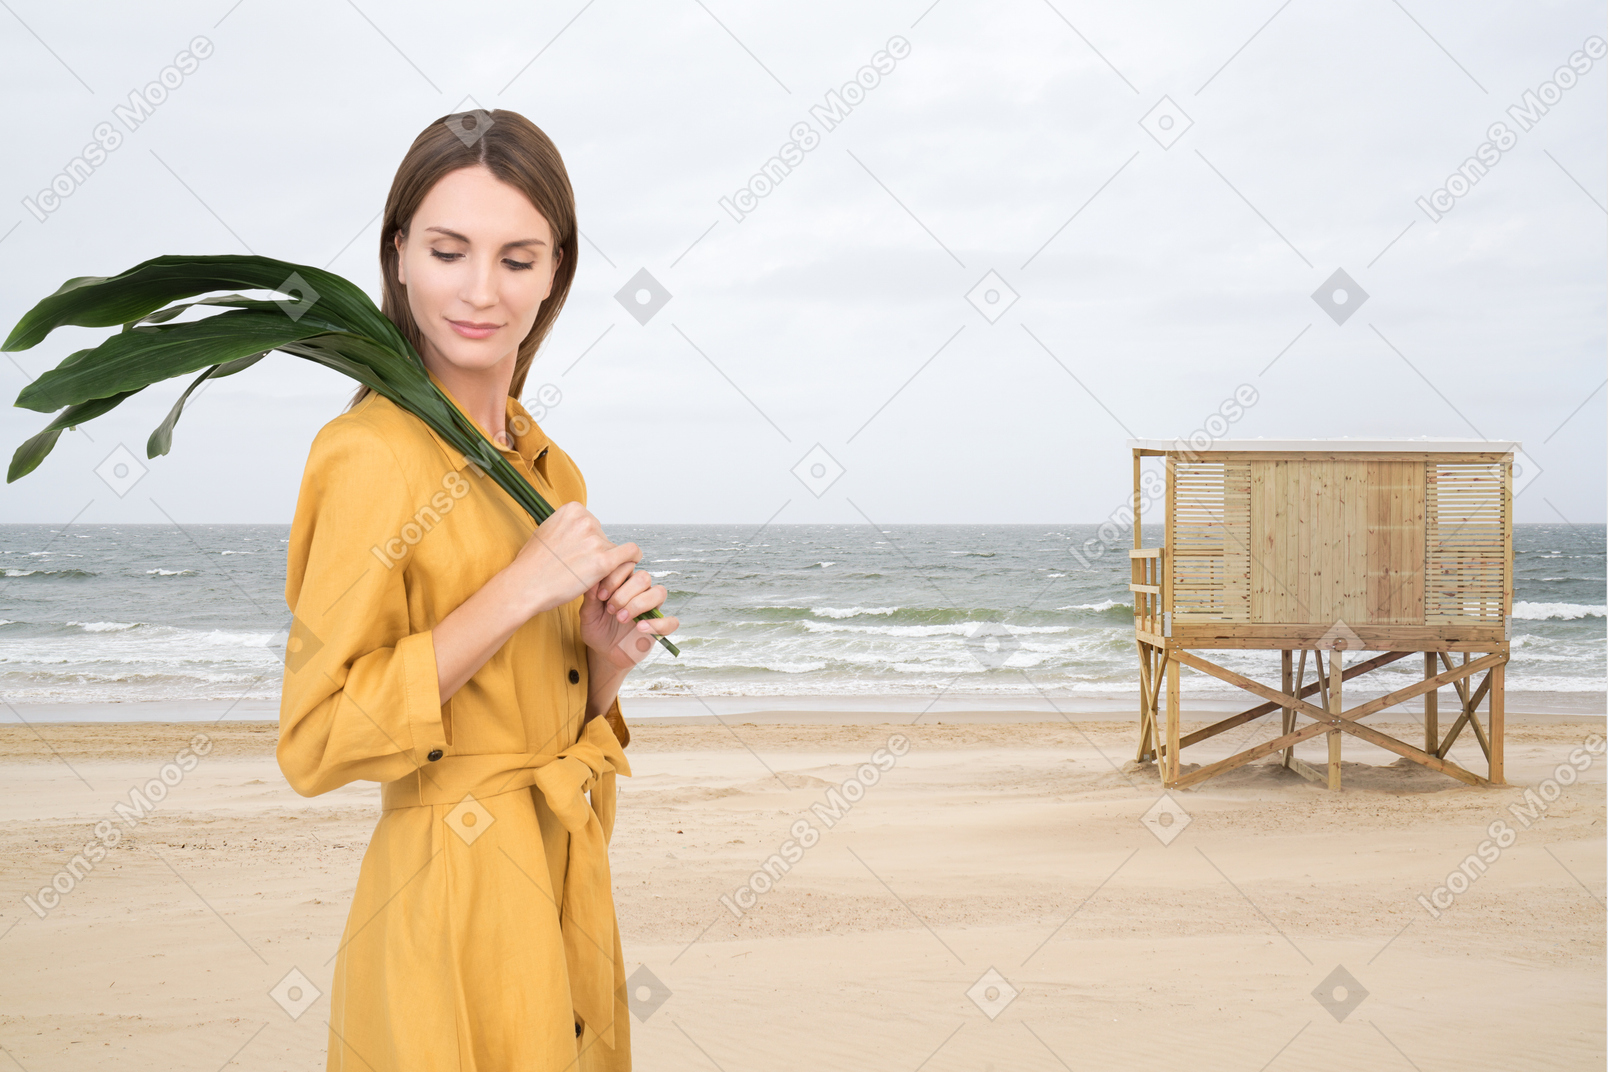 Femme avec des feuilles vertes marchant sur la plage